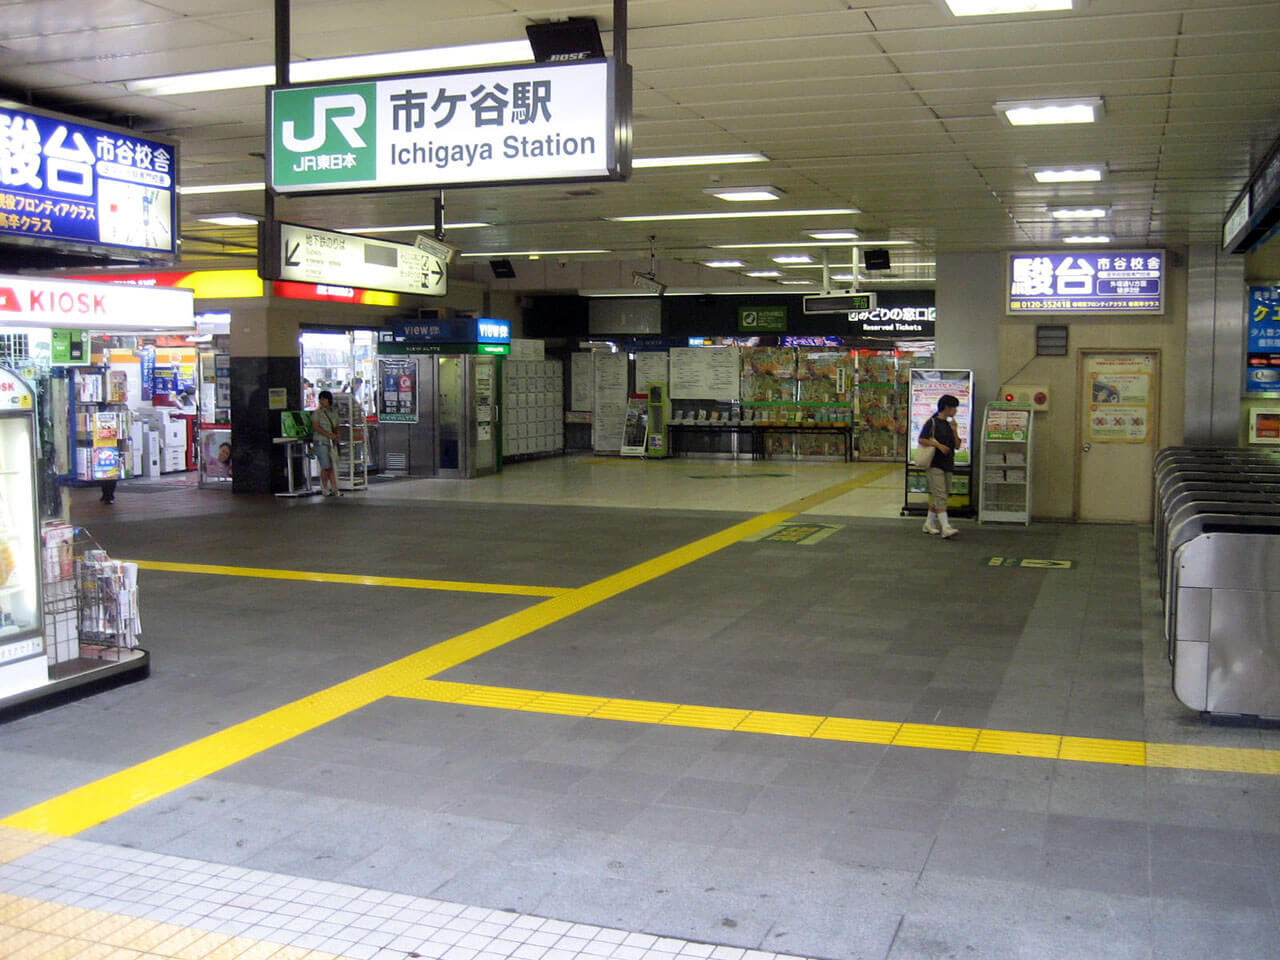 JR東日本市ヶ谷駅の改札口付近の床に使用されているハイブリッドストーン アベイラス アンプロップを出口から見た様子